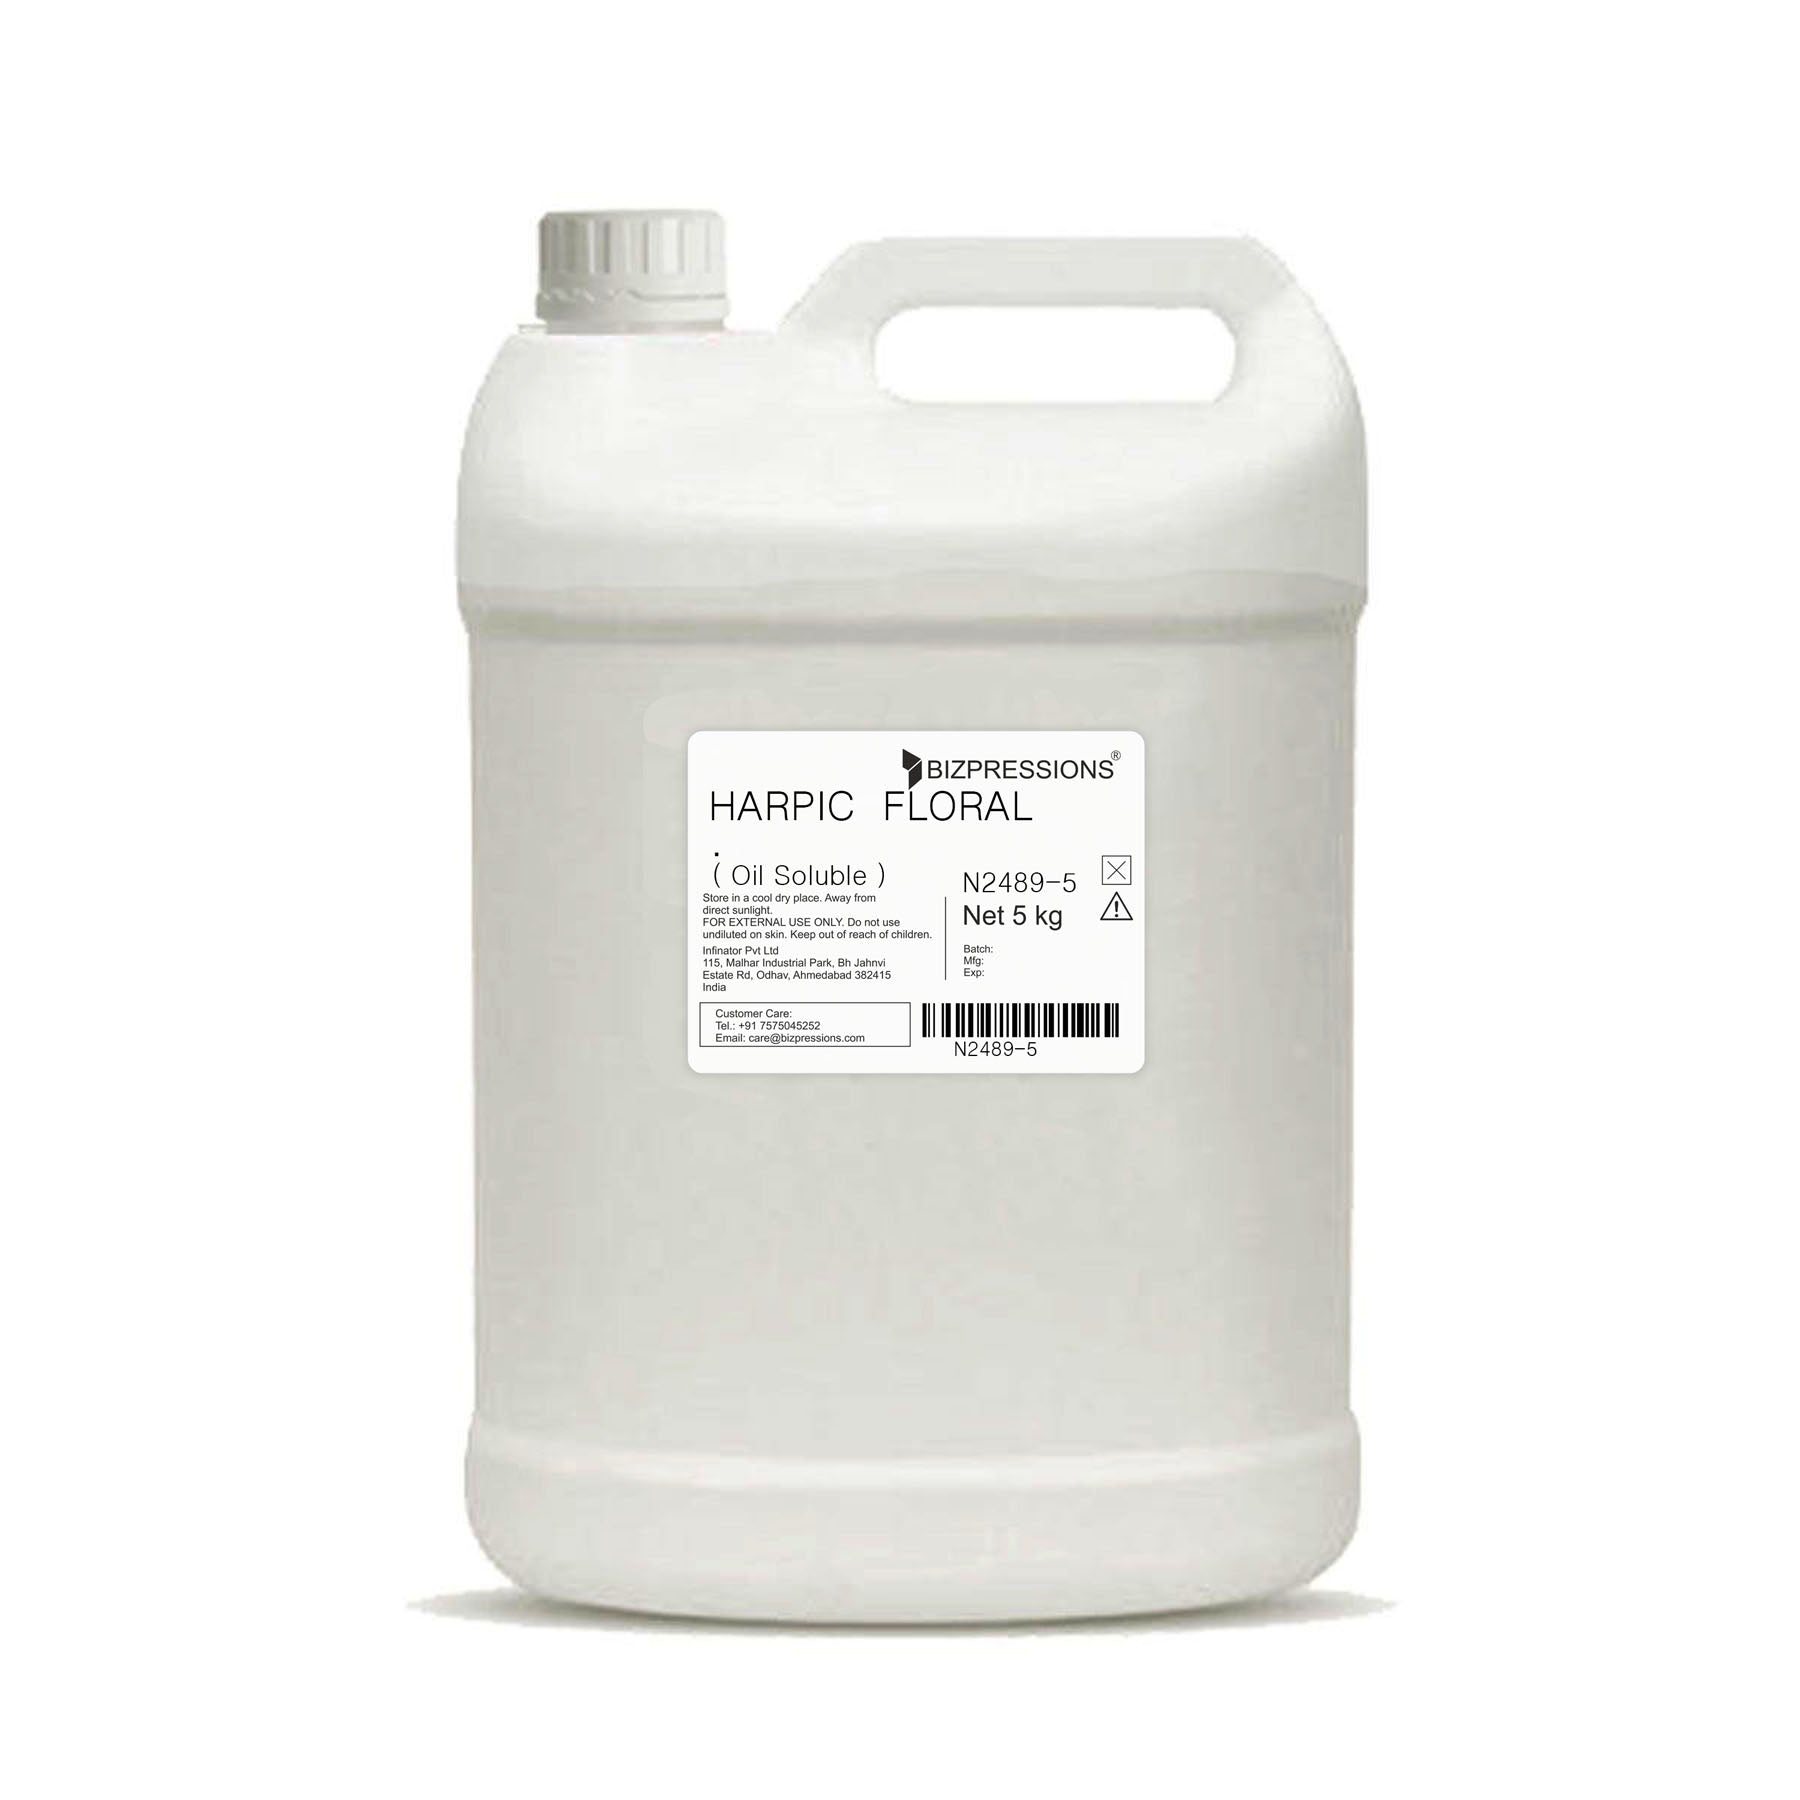 HARPIC FLORAL - Fragrance ( Oil Soluble ) - 5 kg